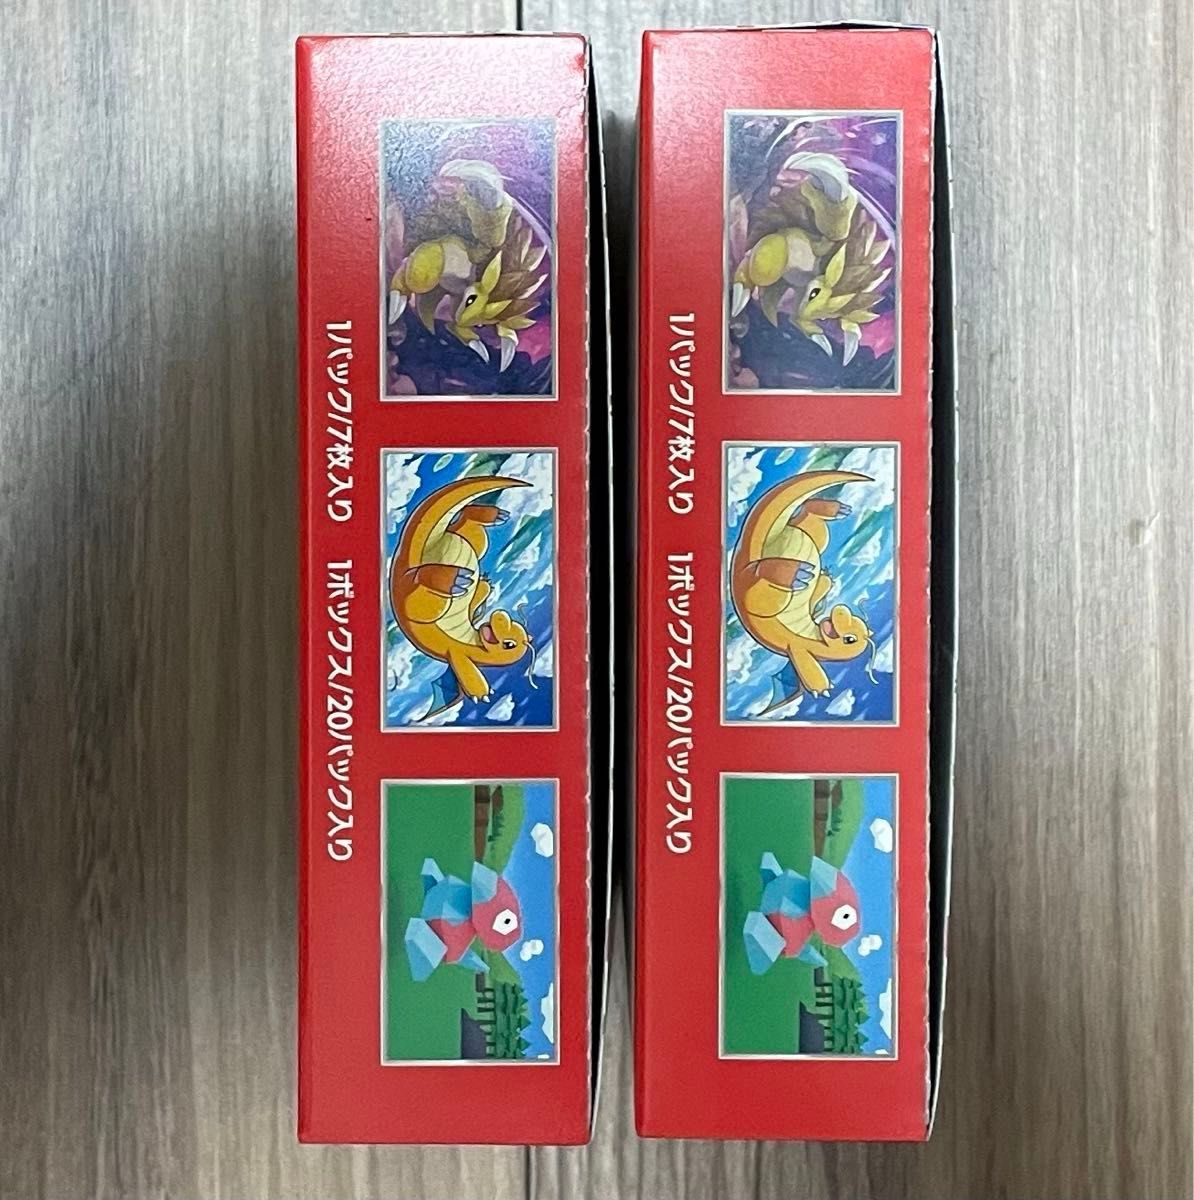 ポケモンカードゲーム 151 2box シュリンクなし ポケモンセンター購入品